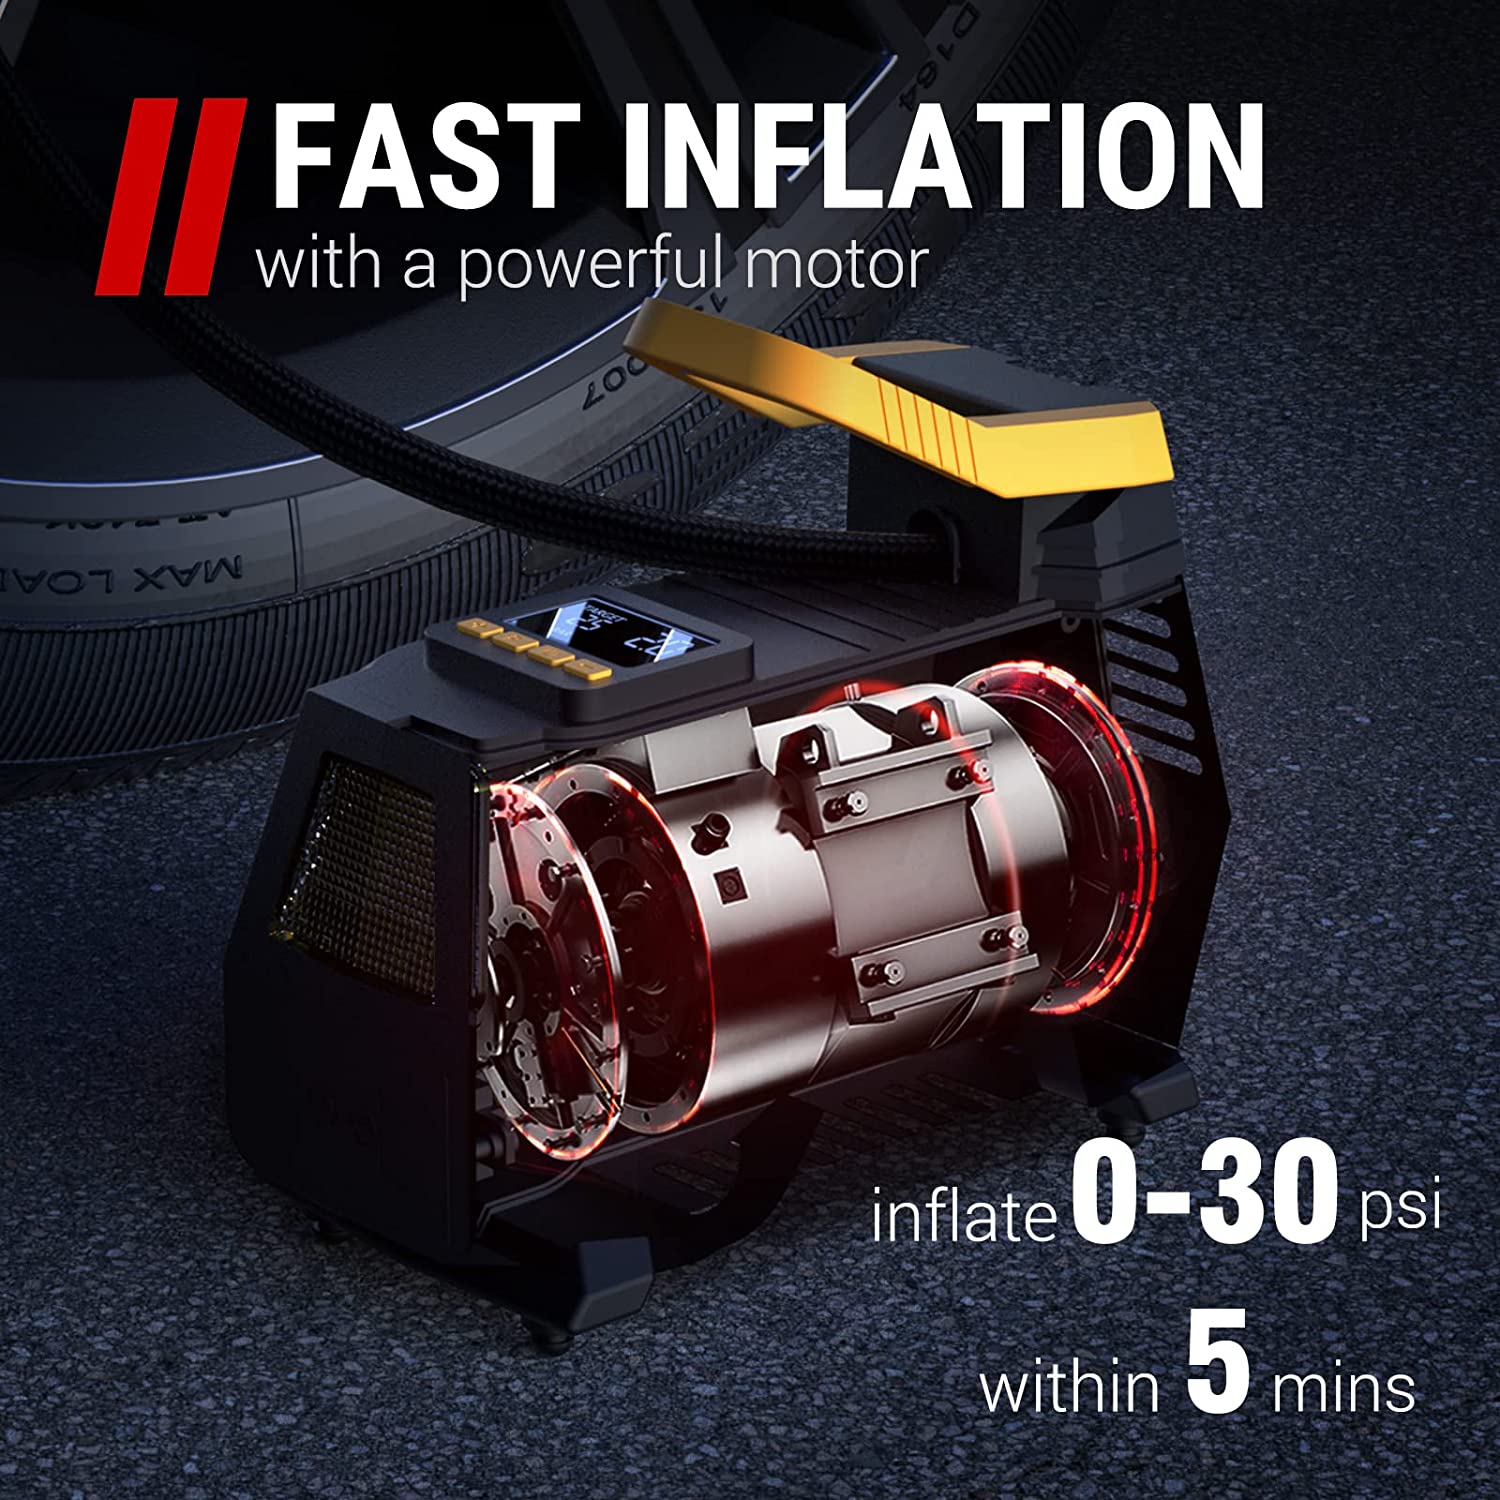 VacLife Tire Inflator Portable Air Compressor - Air Pump for Car Tires